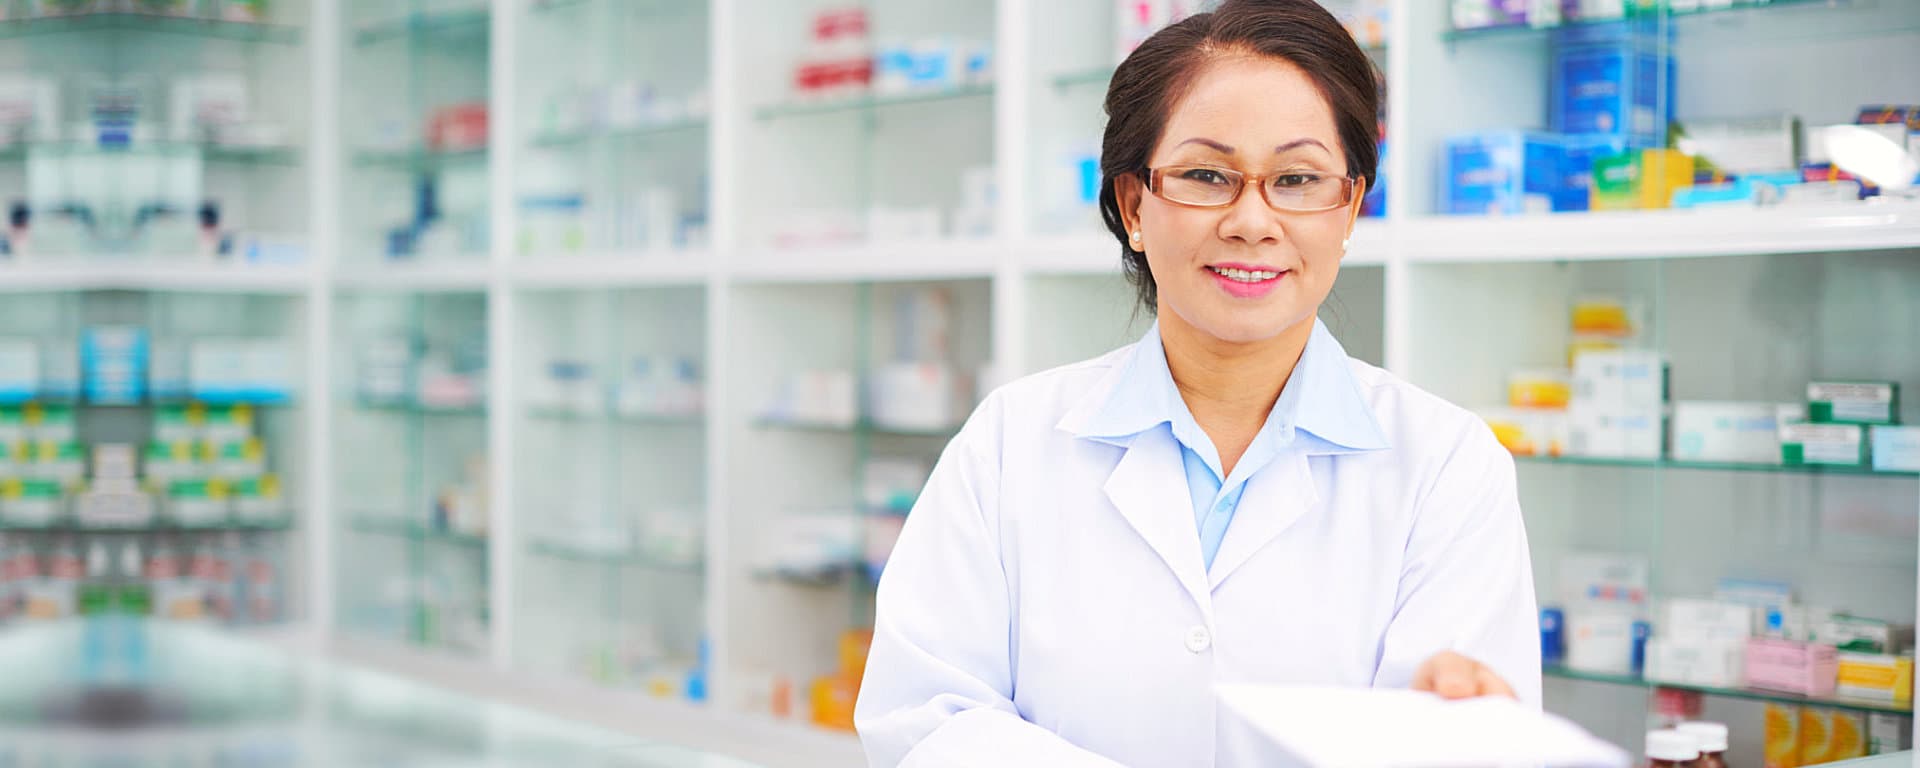 pharmacist smiling on the pharmacy